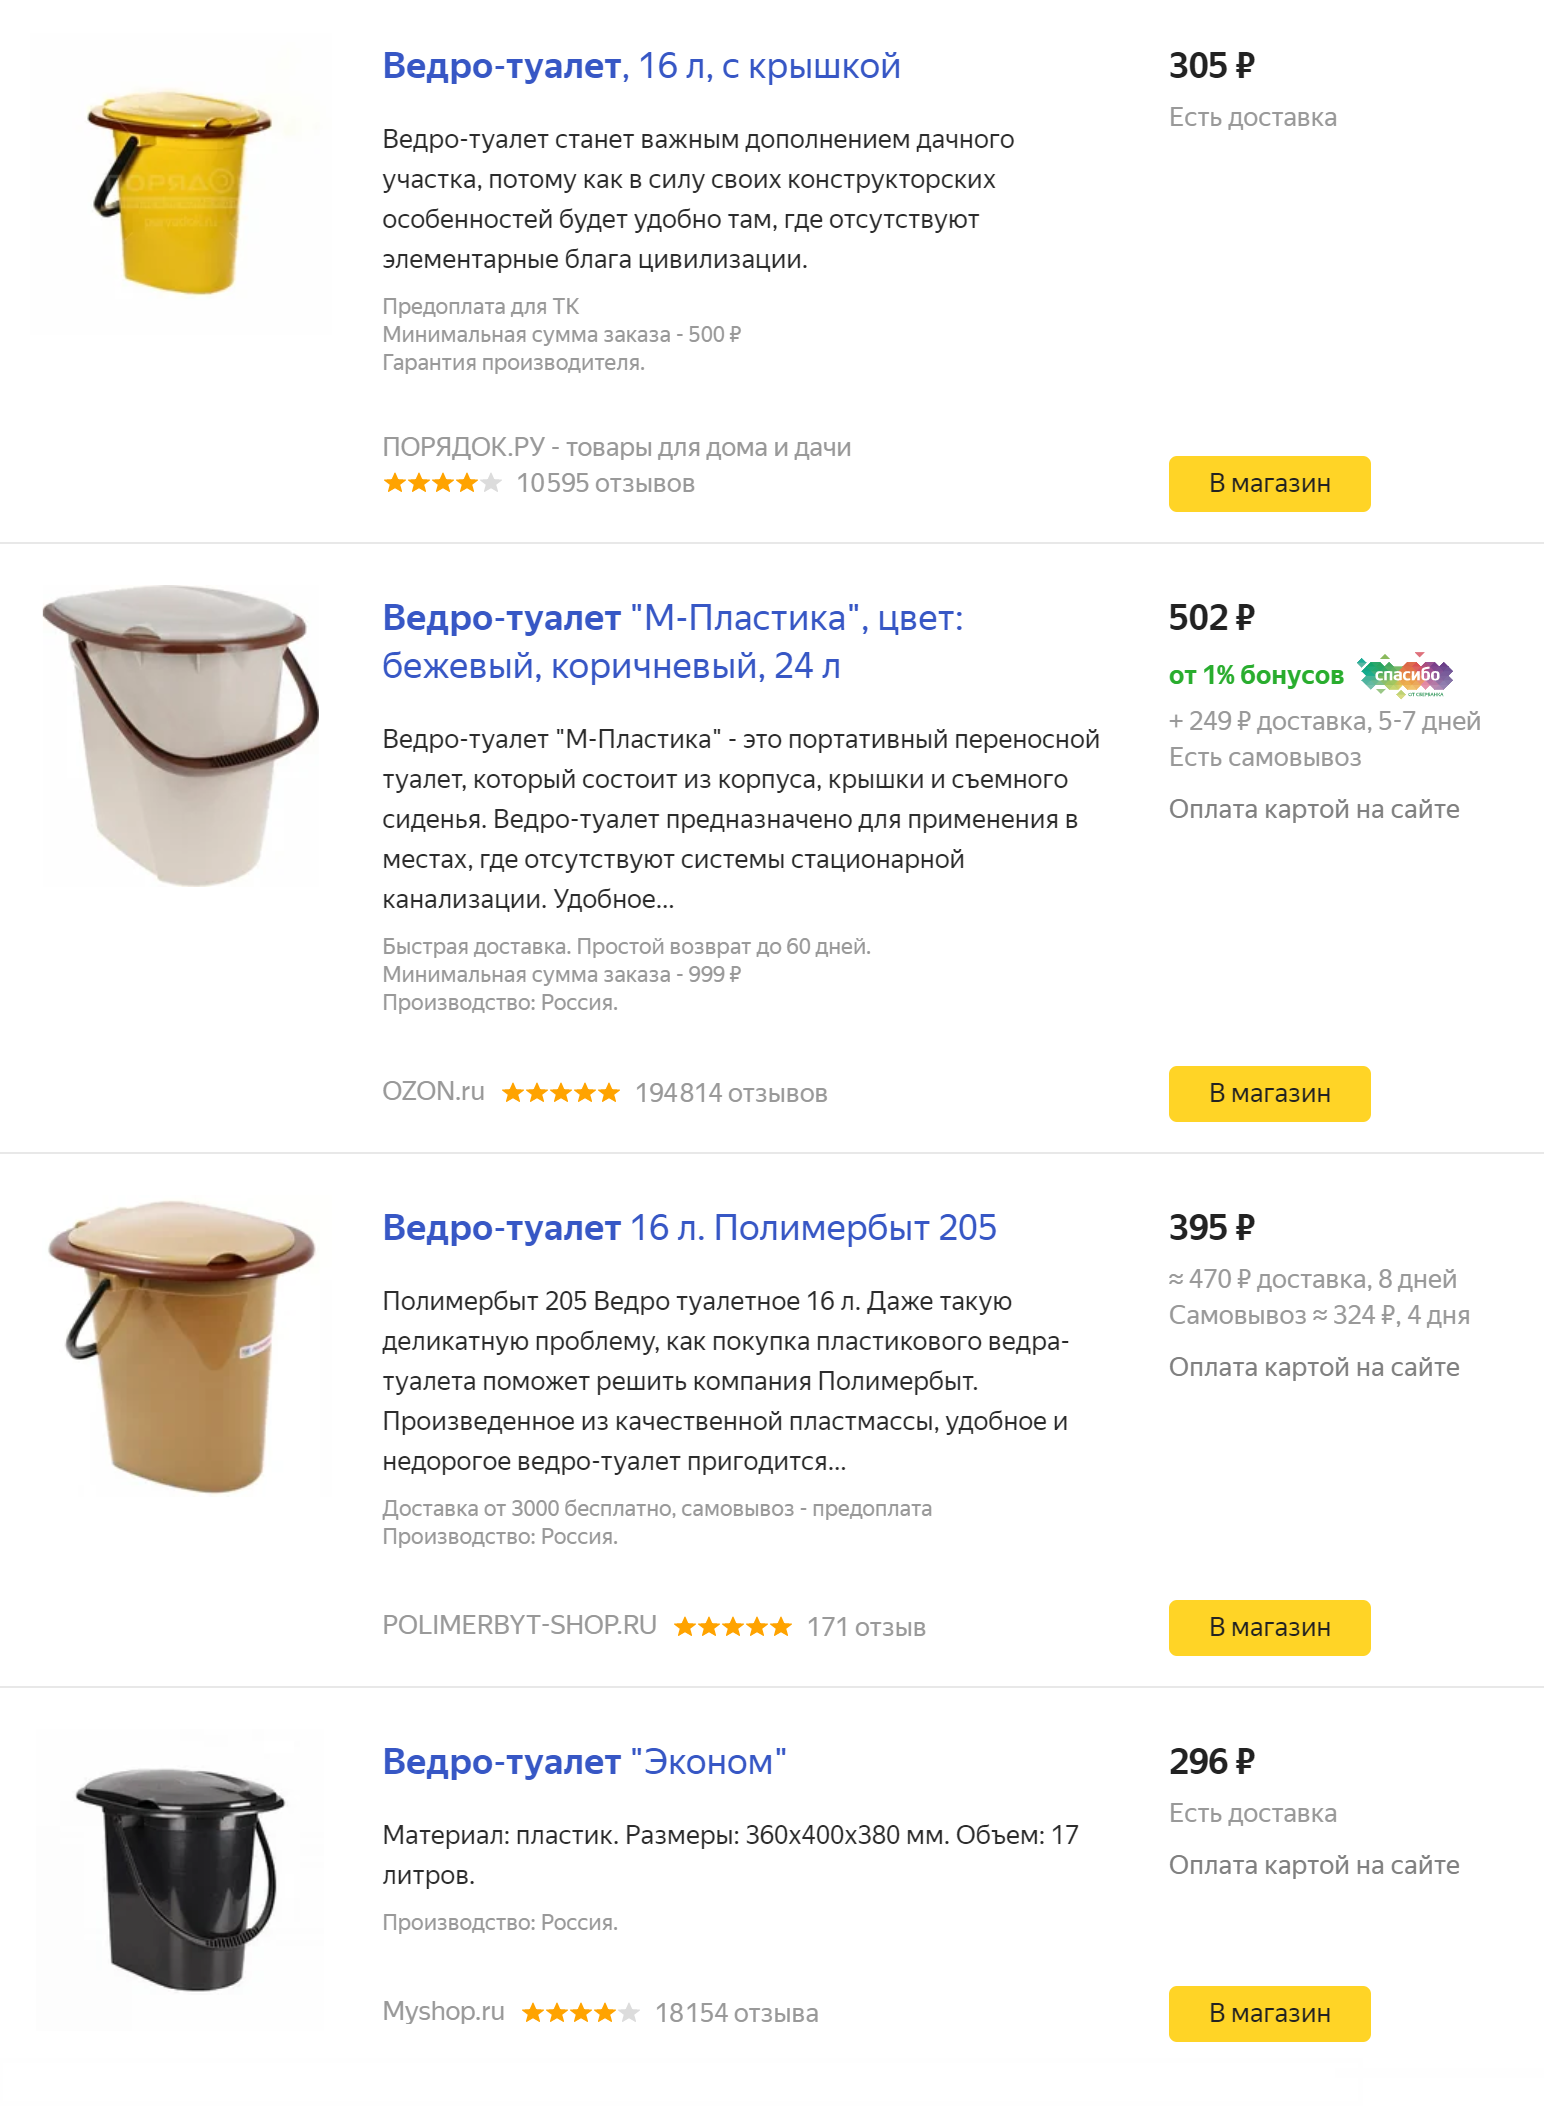 Вот такой разброс цен на ведро-туалет предлагает «Яндекс-маркет». Мы же купили свое в ближайшем магазине, а там что привезли, то и берешь. Никакой проблемы выбора!